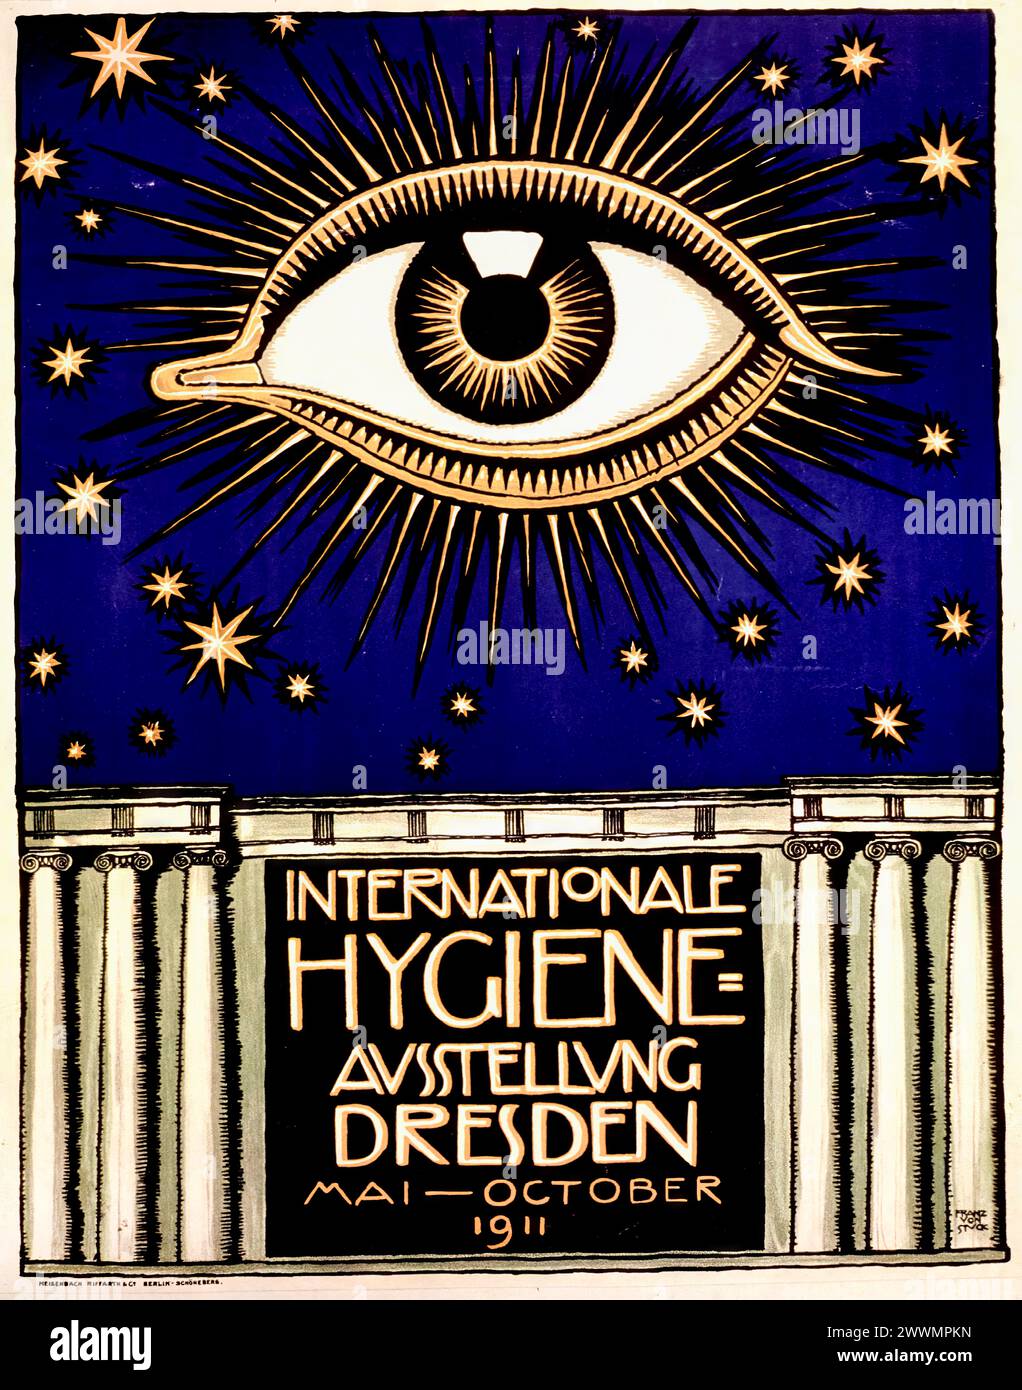 International Hygiene Exhibition, 1911 promotional poster design by Franz von Stuck, 1911 Stock Photo